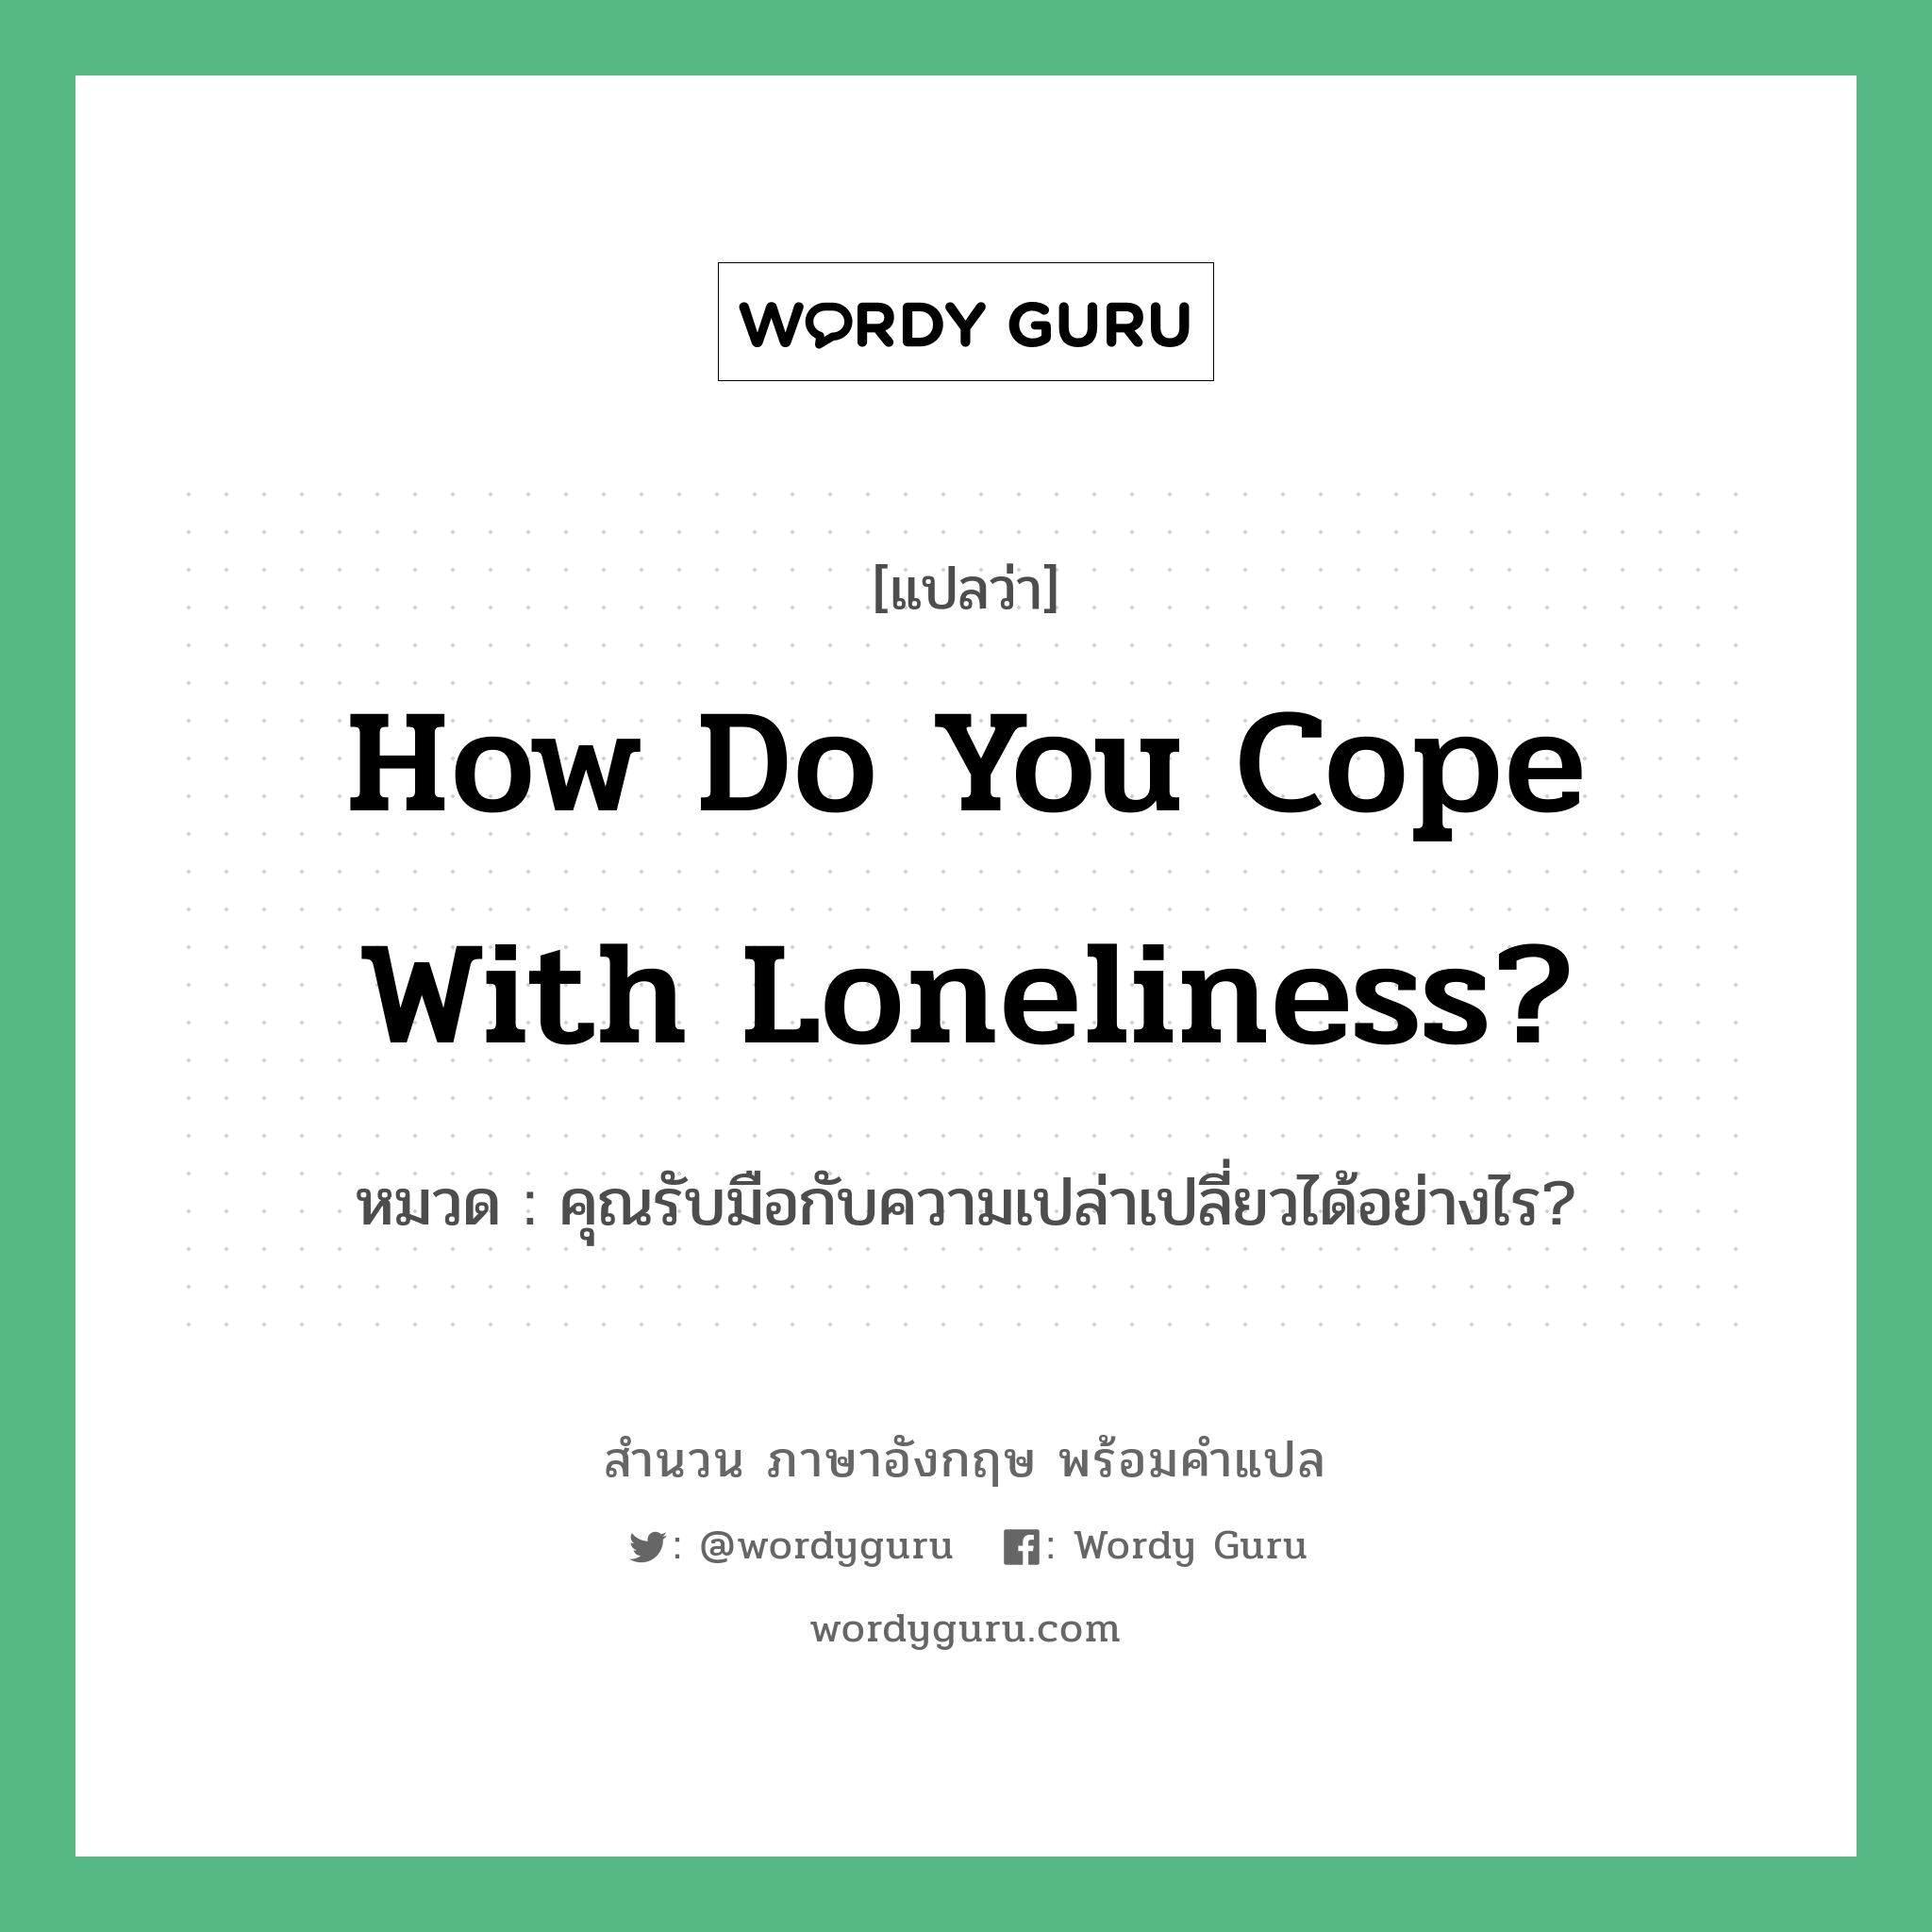 How do you cope with loneliness? แปลว่า?, สำนวนภาษาอังกฤษ How do you cope with loneliness? หมวด คุณรับมือกับความเปล่าเปลี่ยวได้อย่างไร?